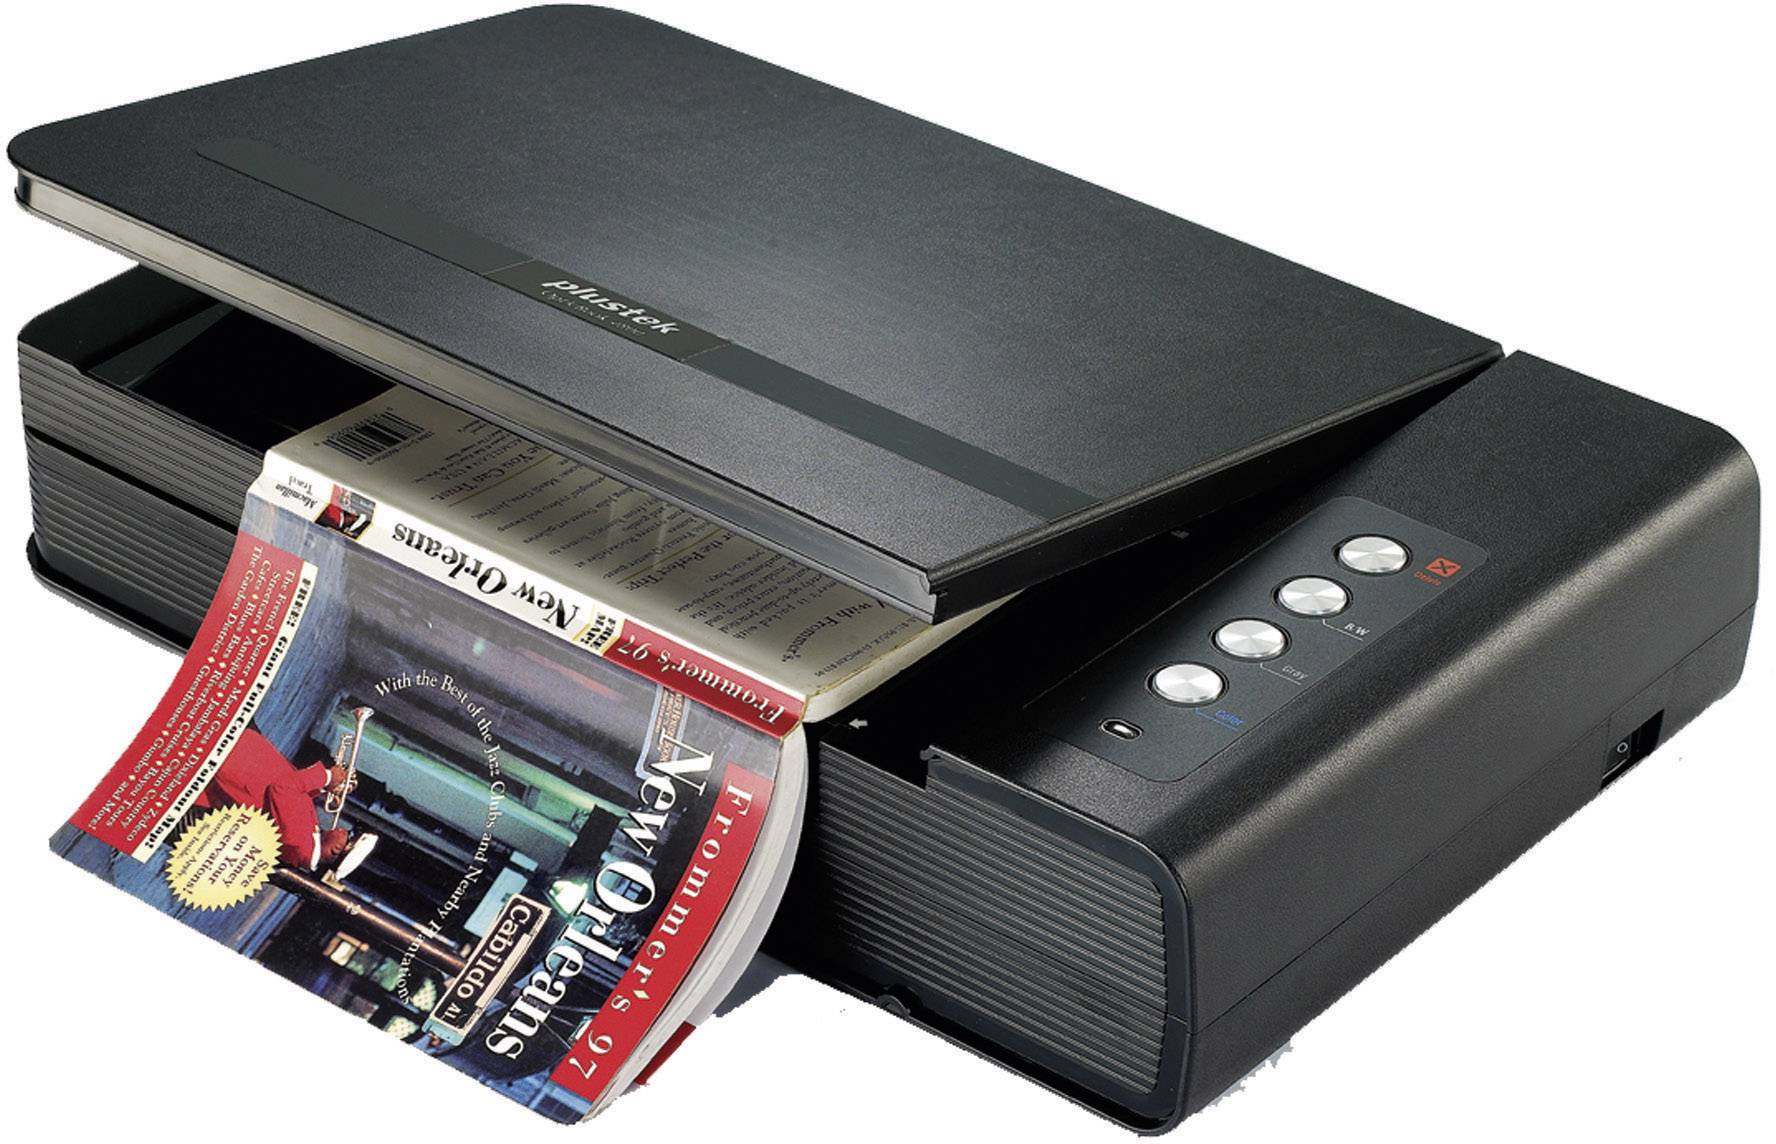 ブックスキャナー plustek Opticbook 4800 - PC周辺機器